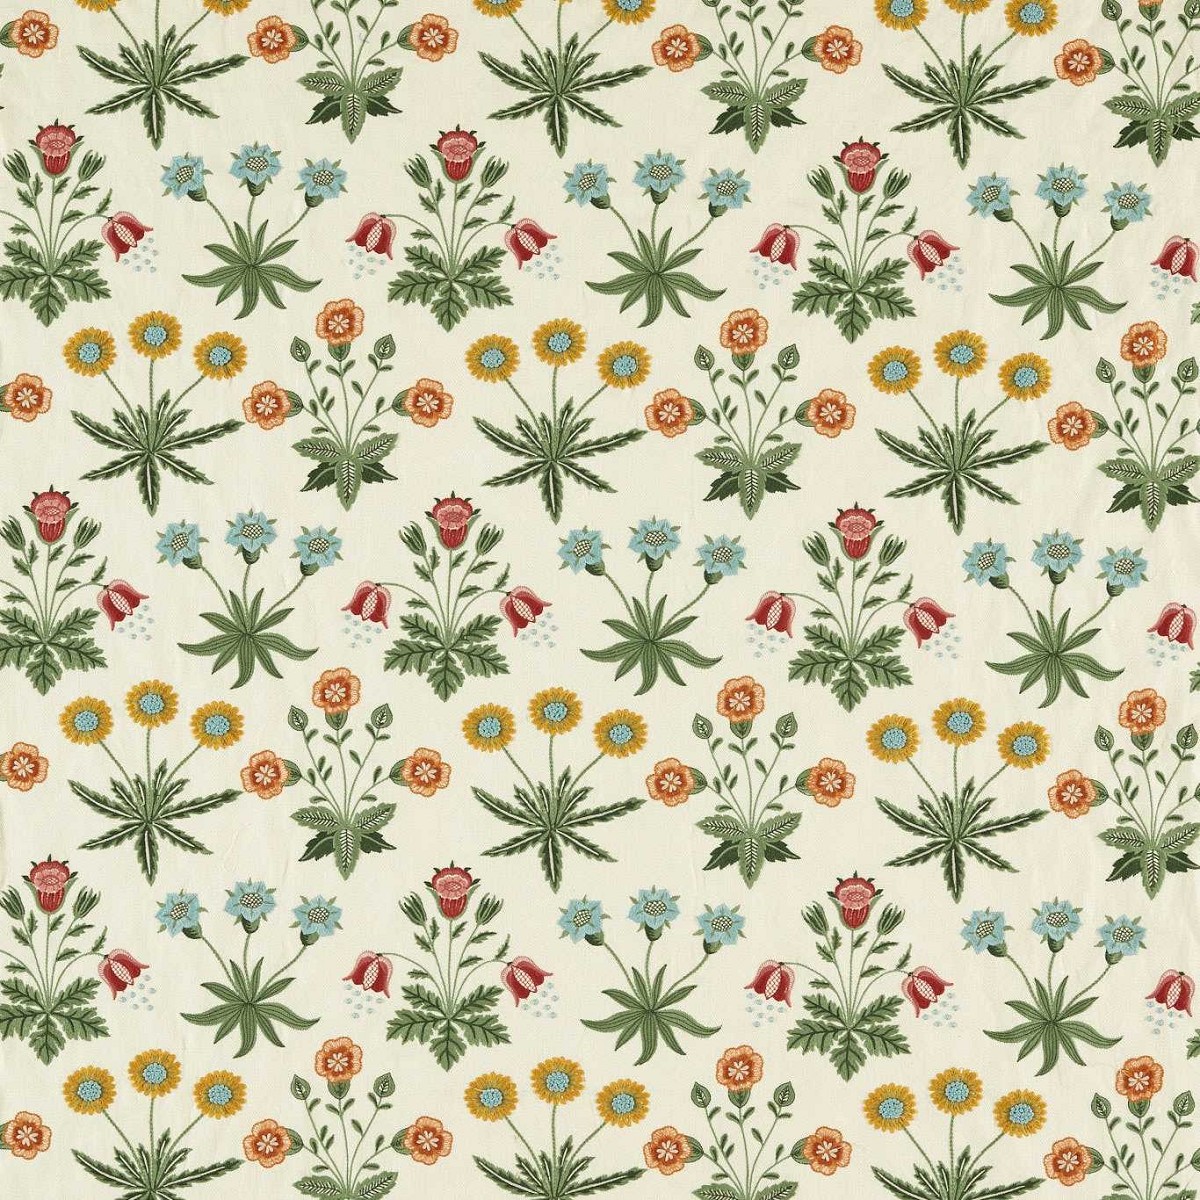 Daisy Embroidery Cream/Multi Fabric by William Morris & Co.